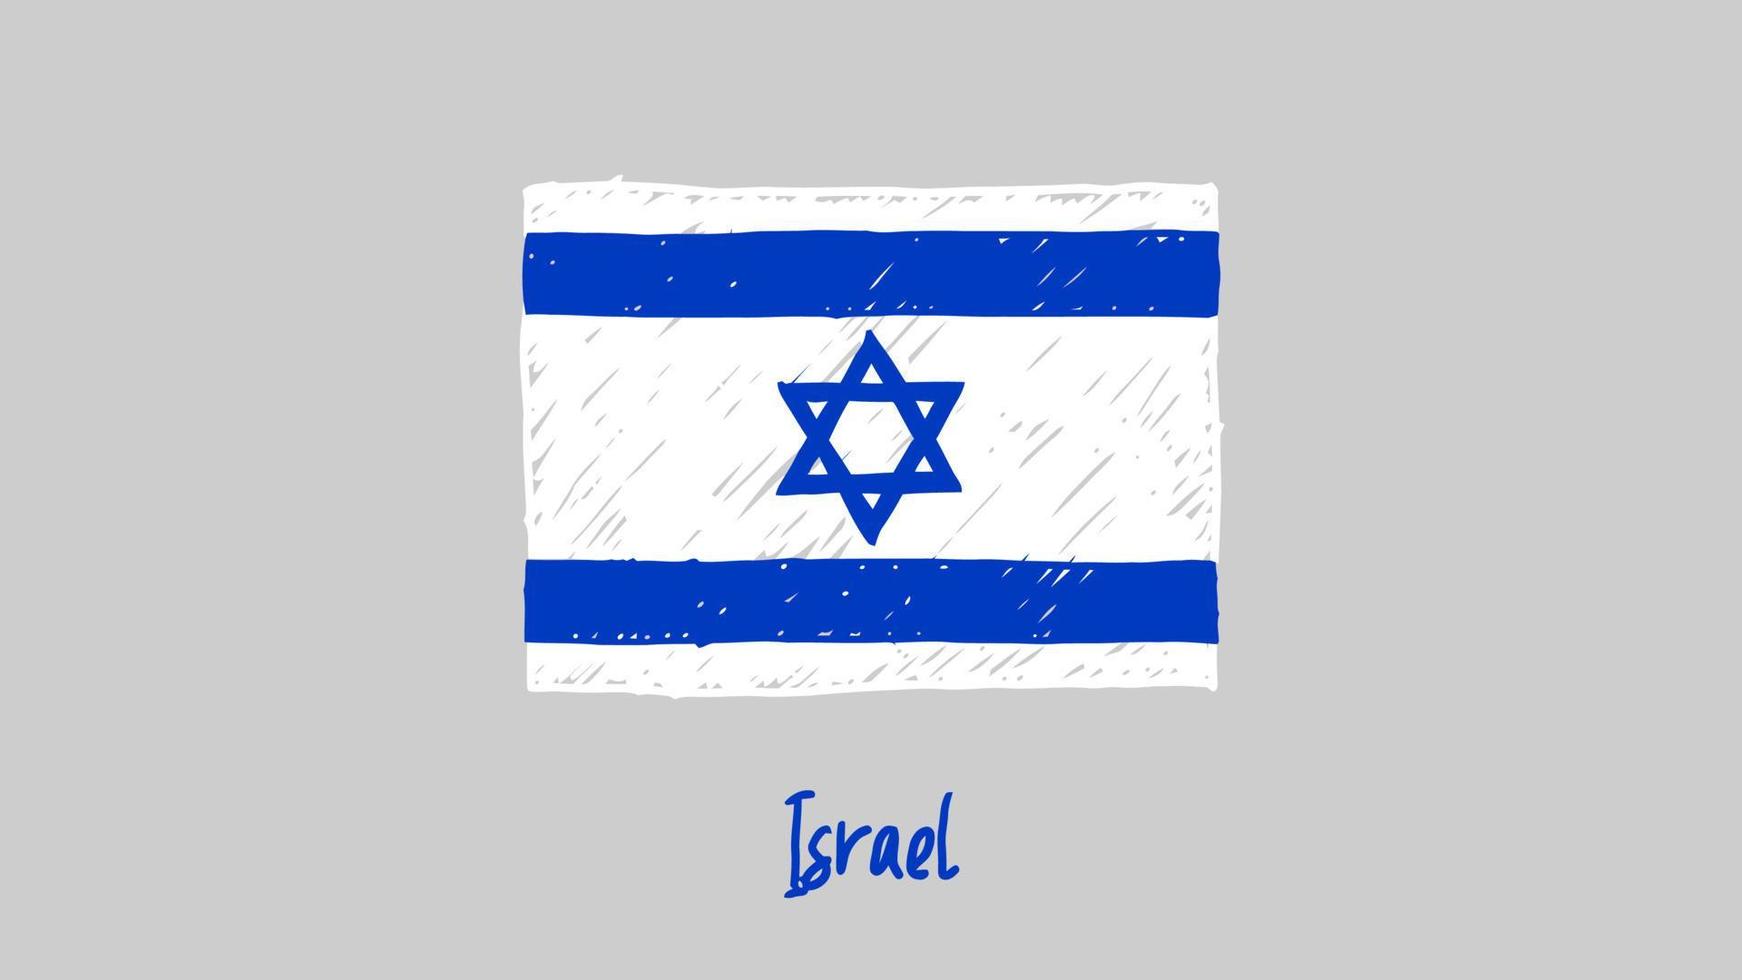 israel.eisrael bandiera nazionale del paese marcatore o schizzo a matita illustrazione vettore